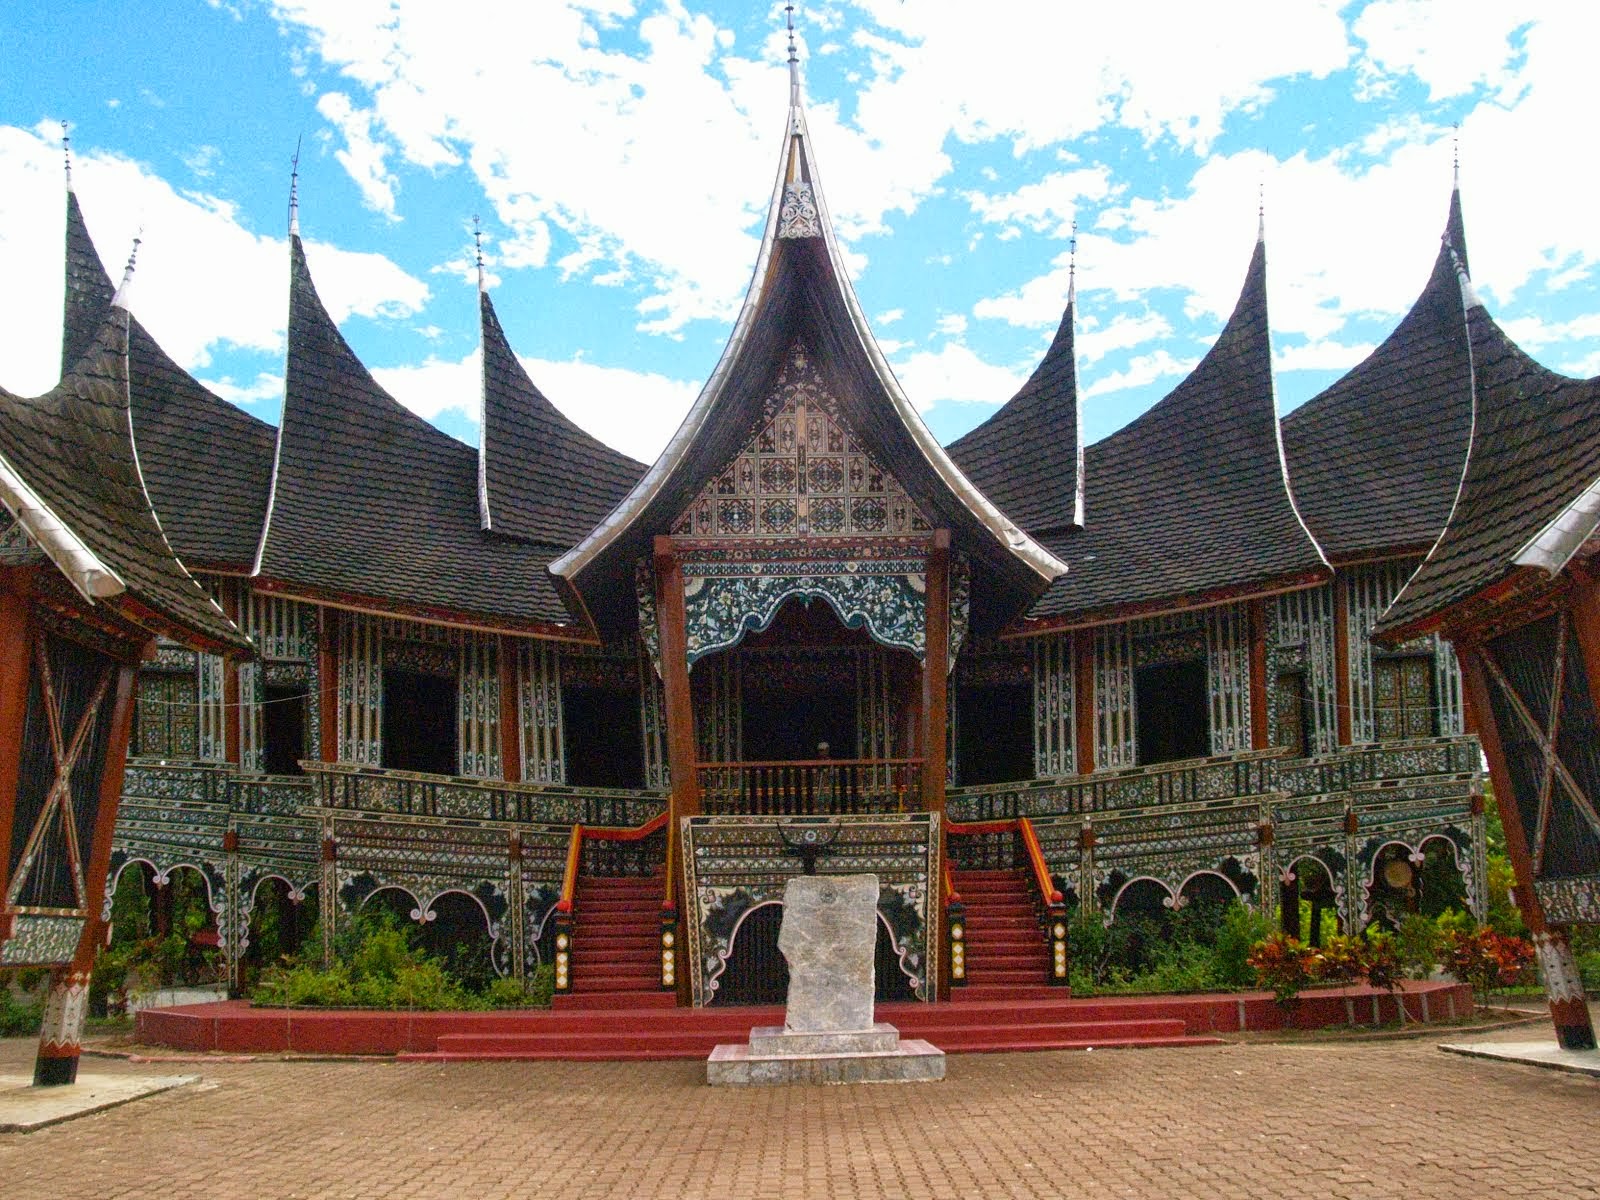  Rumah Gadang  Visit Indonesia Culture